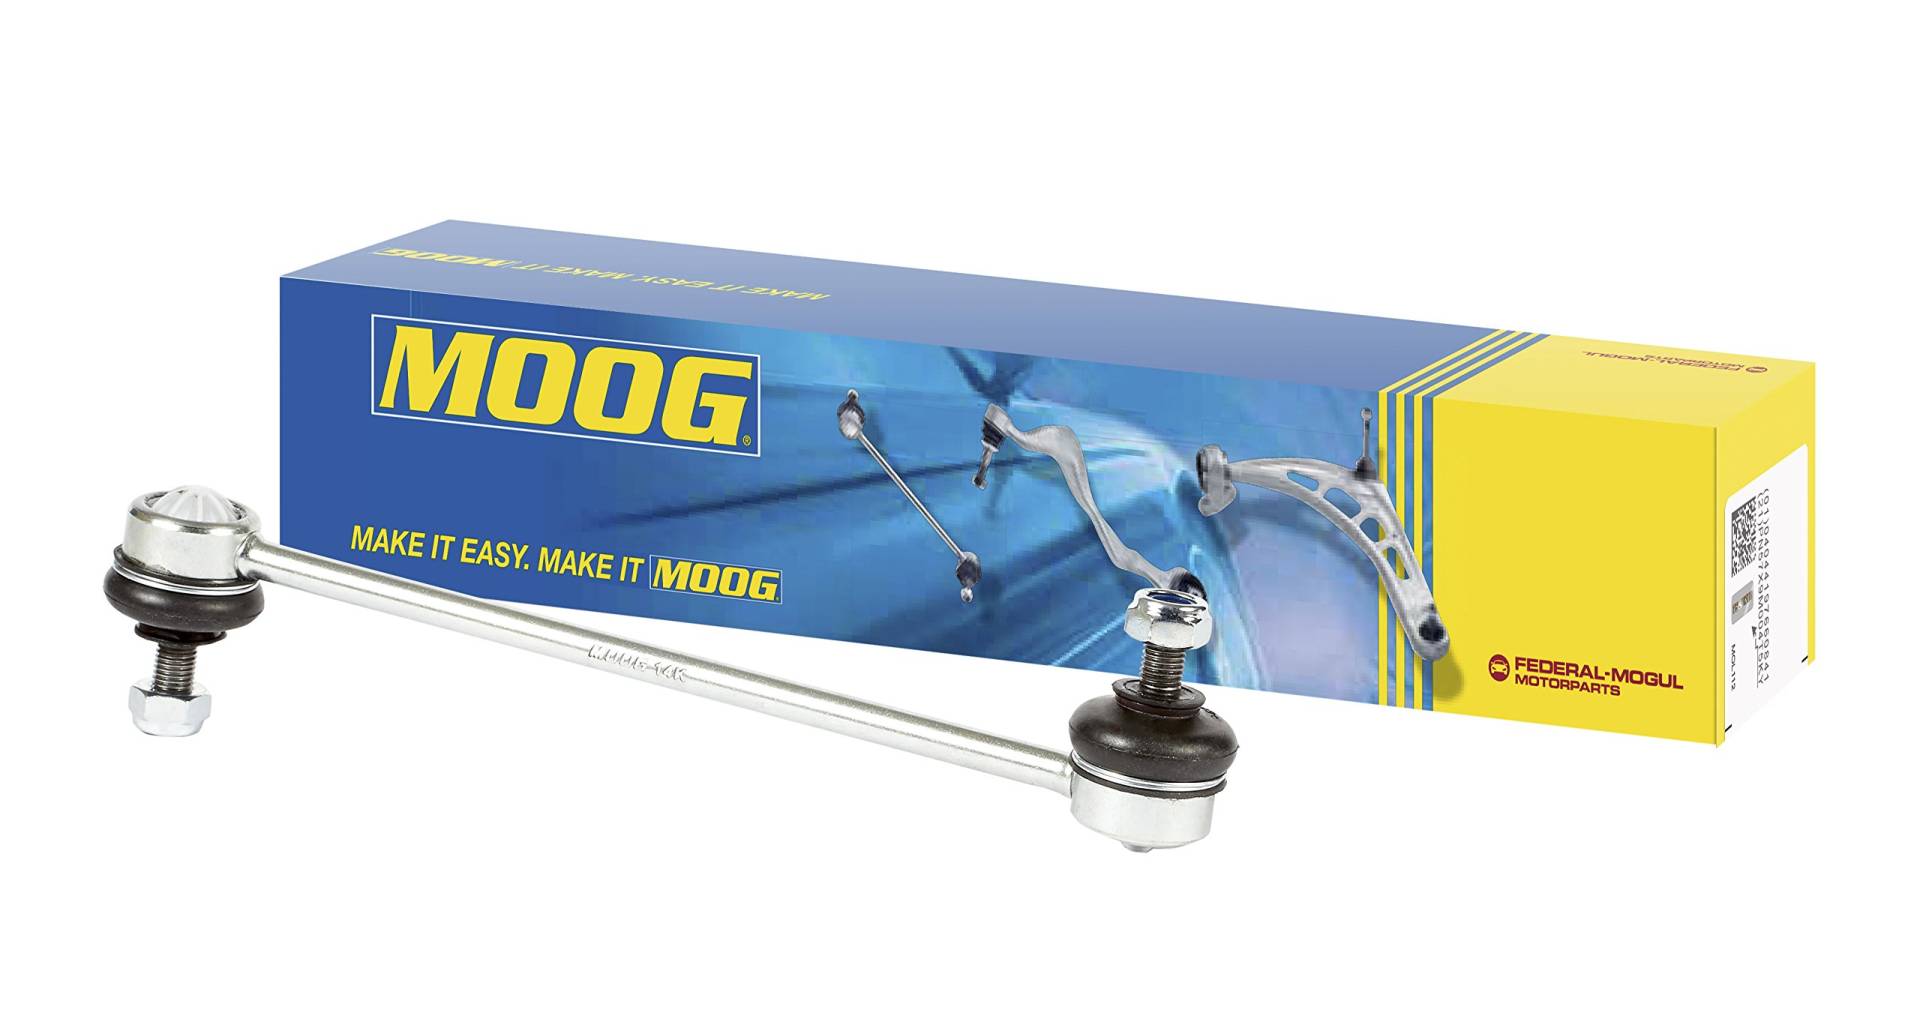 MOOG NI-LS-7227 Stabilsatoren von MOOG